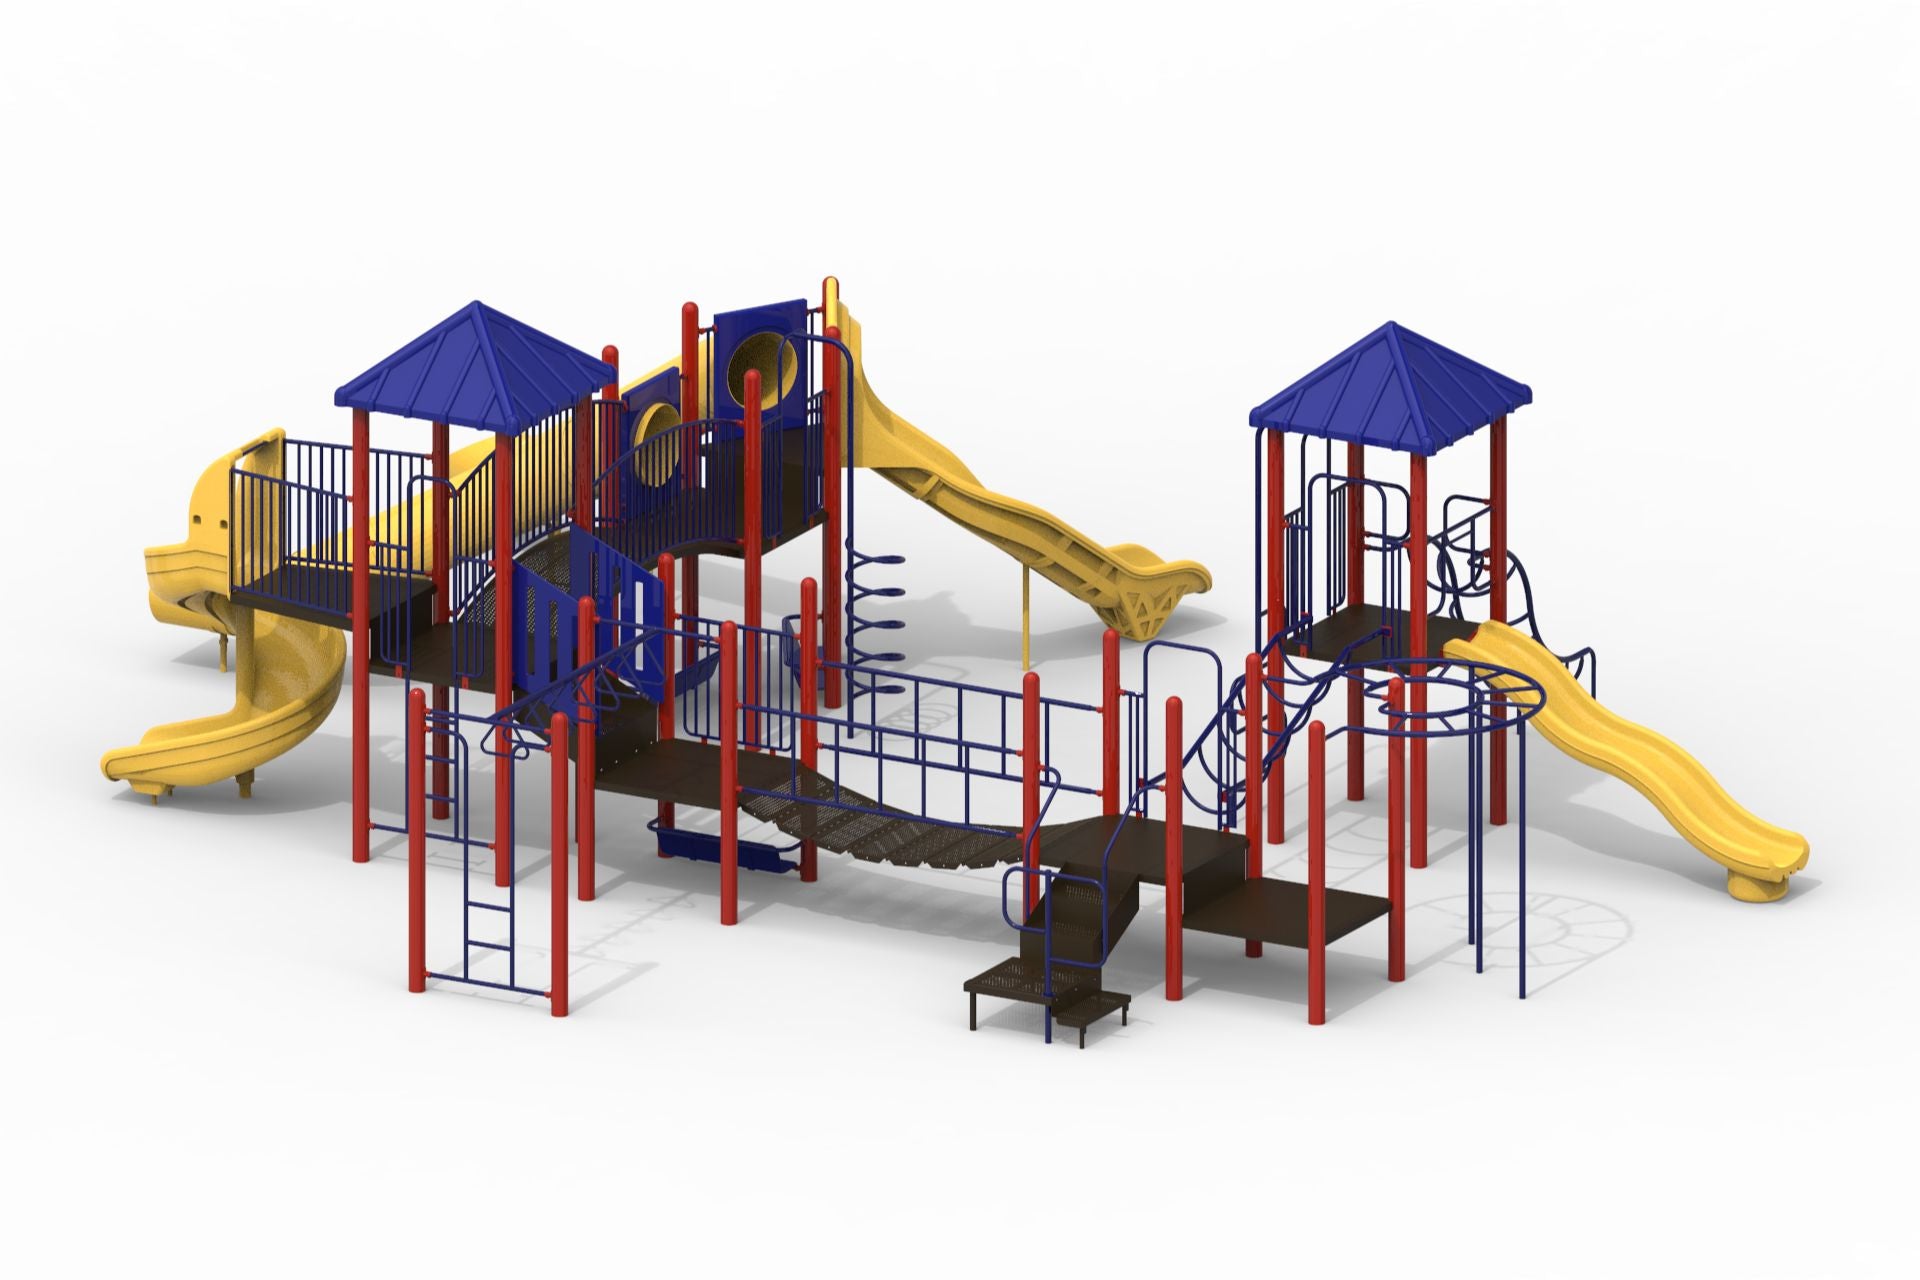 Thomas Mega Series Modular Playground